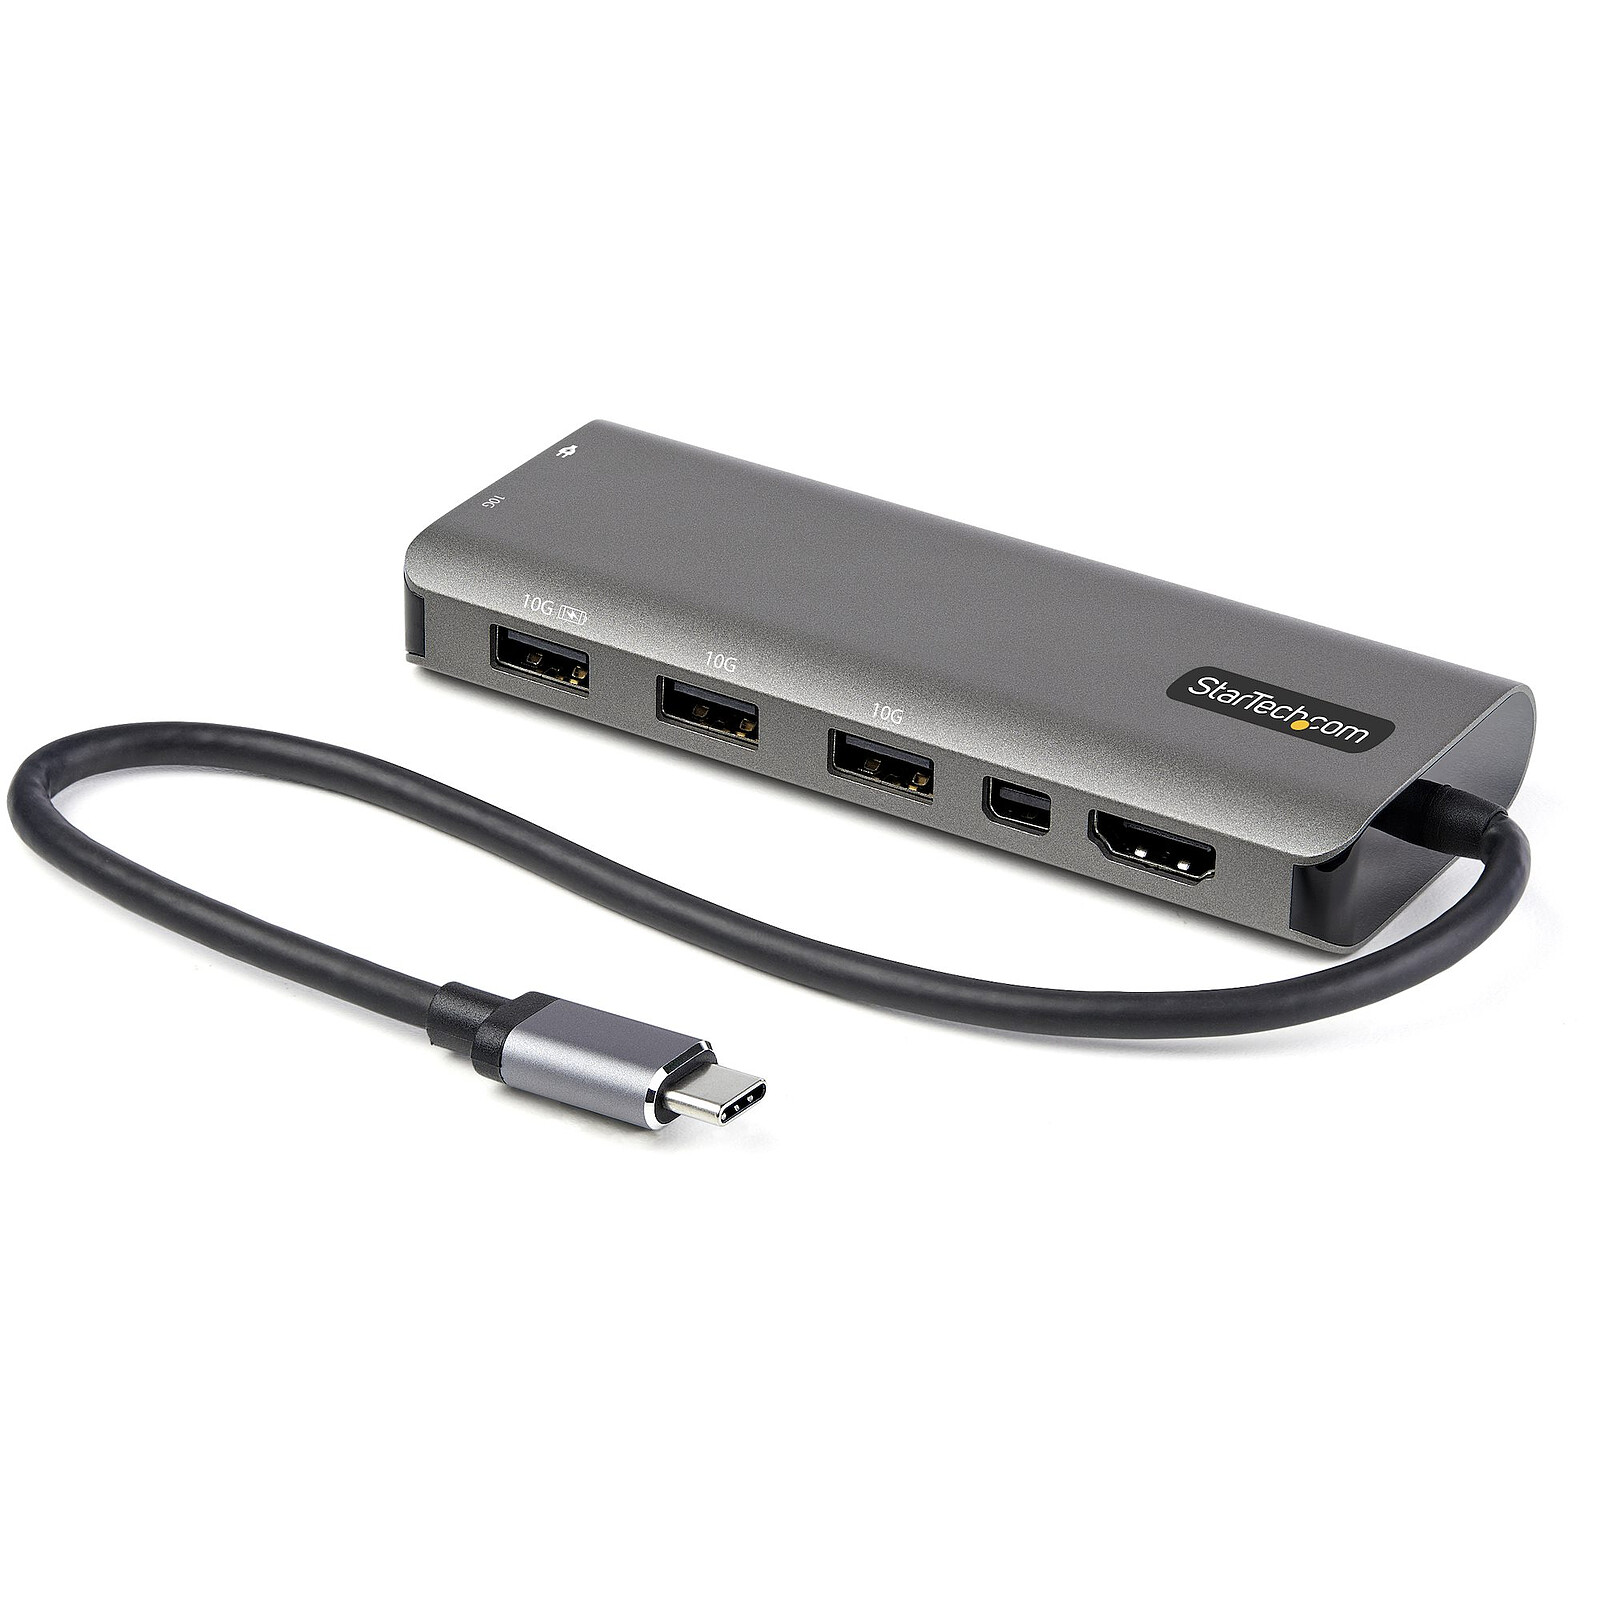 Docking Station de USB-C a HDMI y VGA, 4 en 1, con suministro de energía